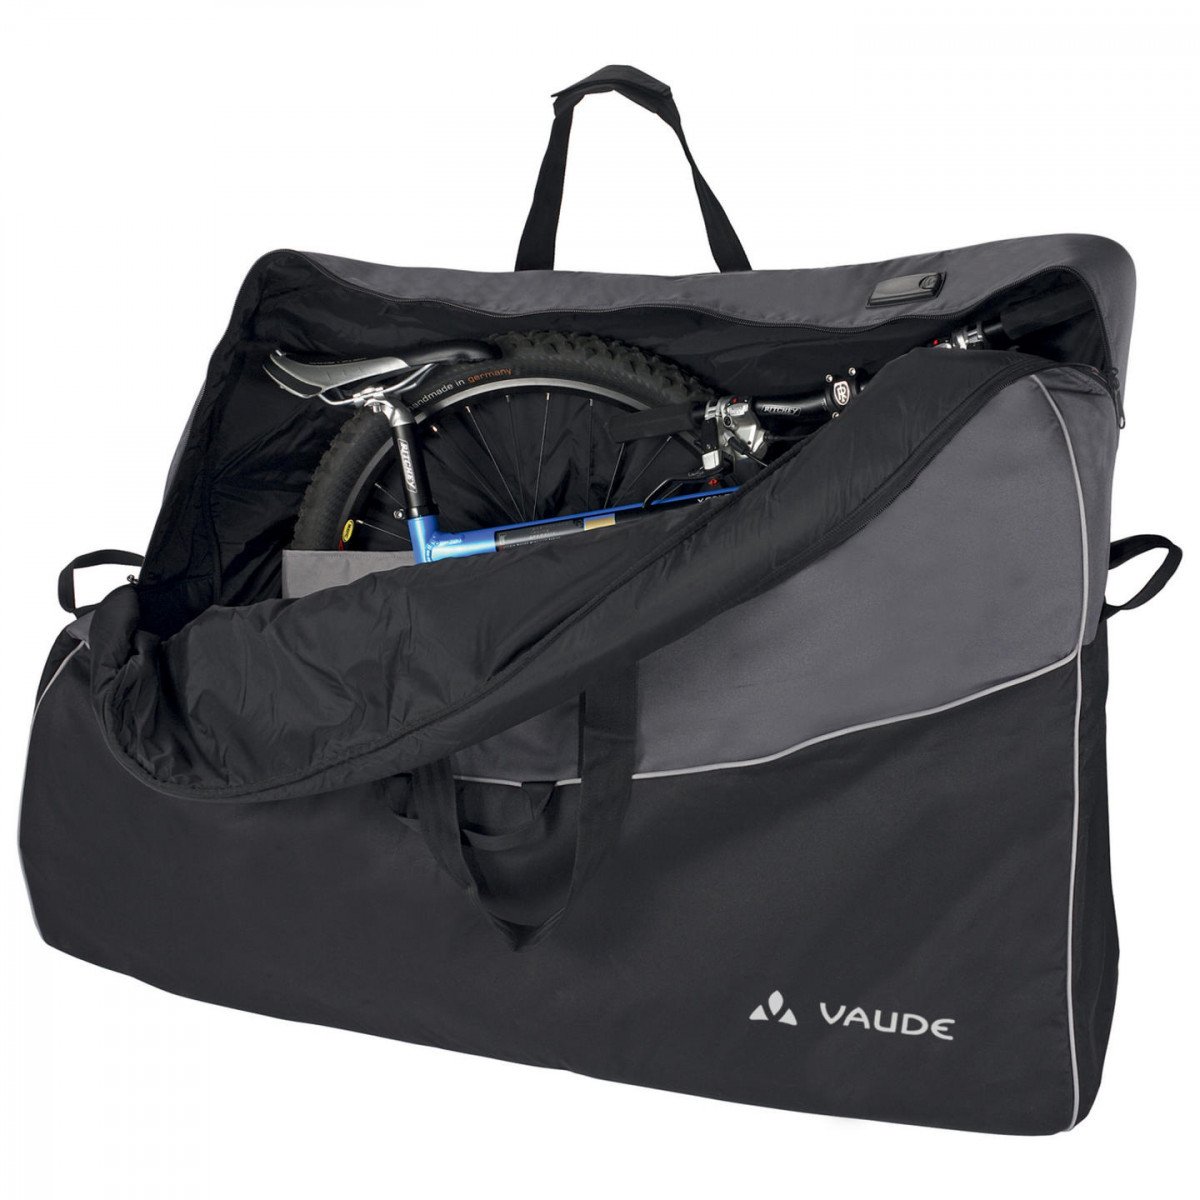 Велосипедная сумка VAUDE Big Bike Bag Pro сумка транспортировочная, размеры: 85x130x28см, 15257 клинса пластырь текстильный универсальный набор 16 размеры 1 9x7 2 см 2 2x7 5 см d 2 3 см